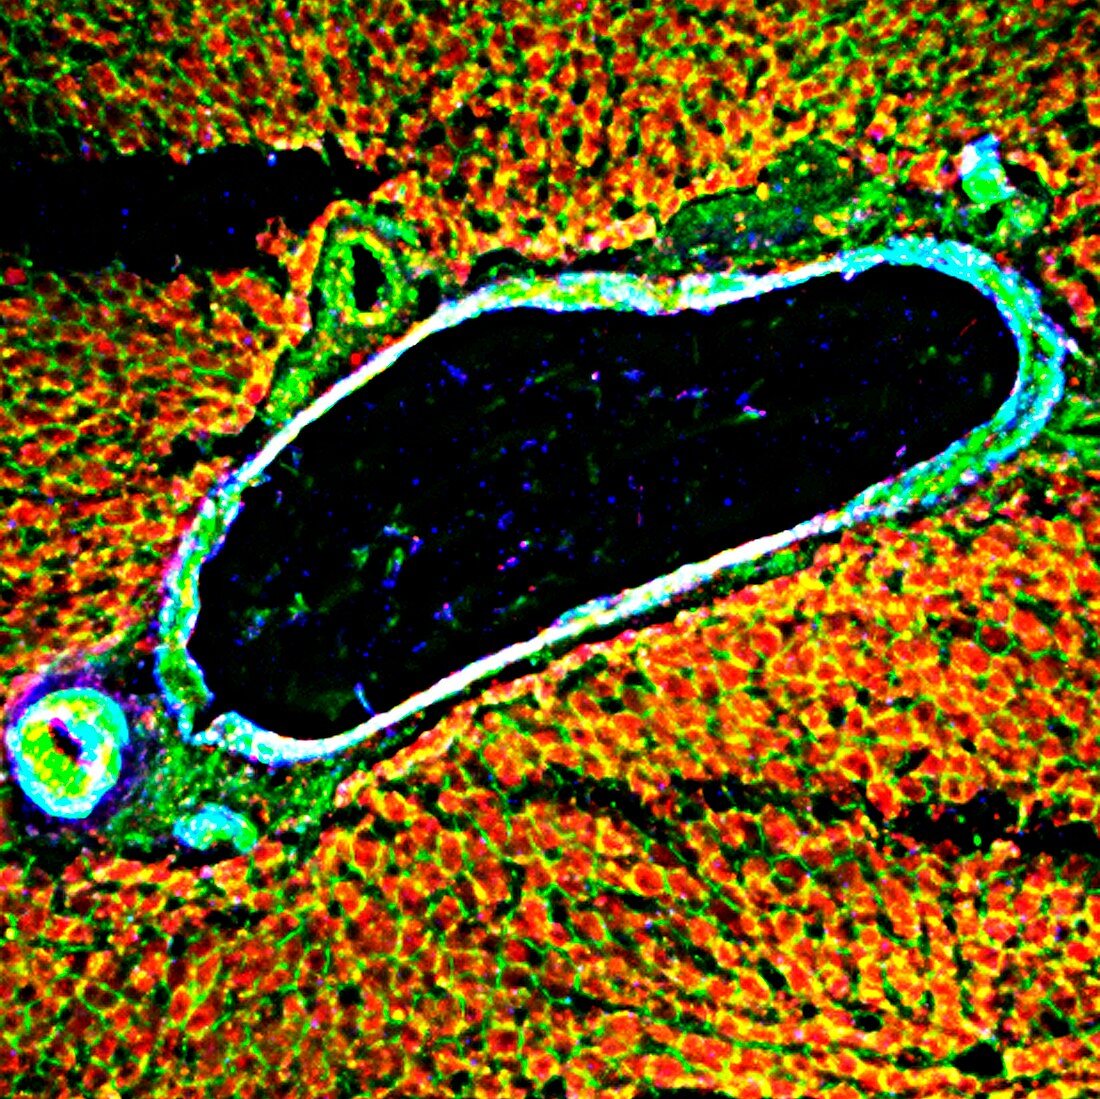 Liver tissue,fluorescence micrograph